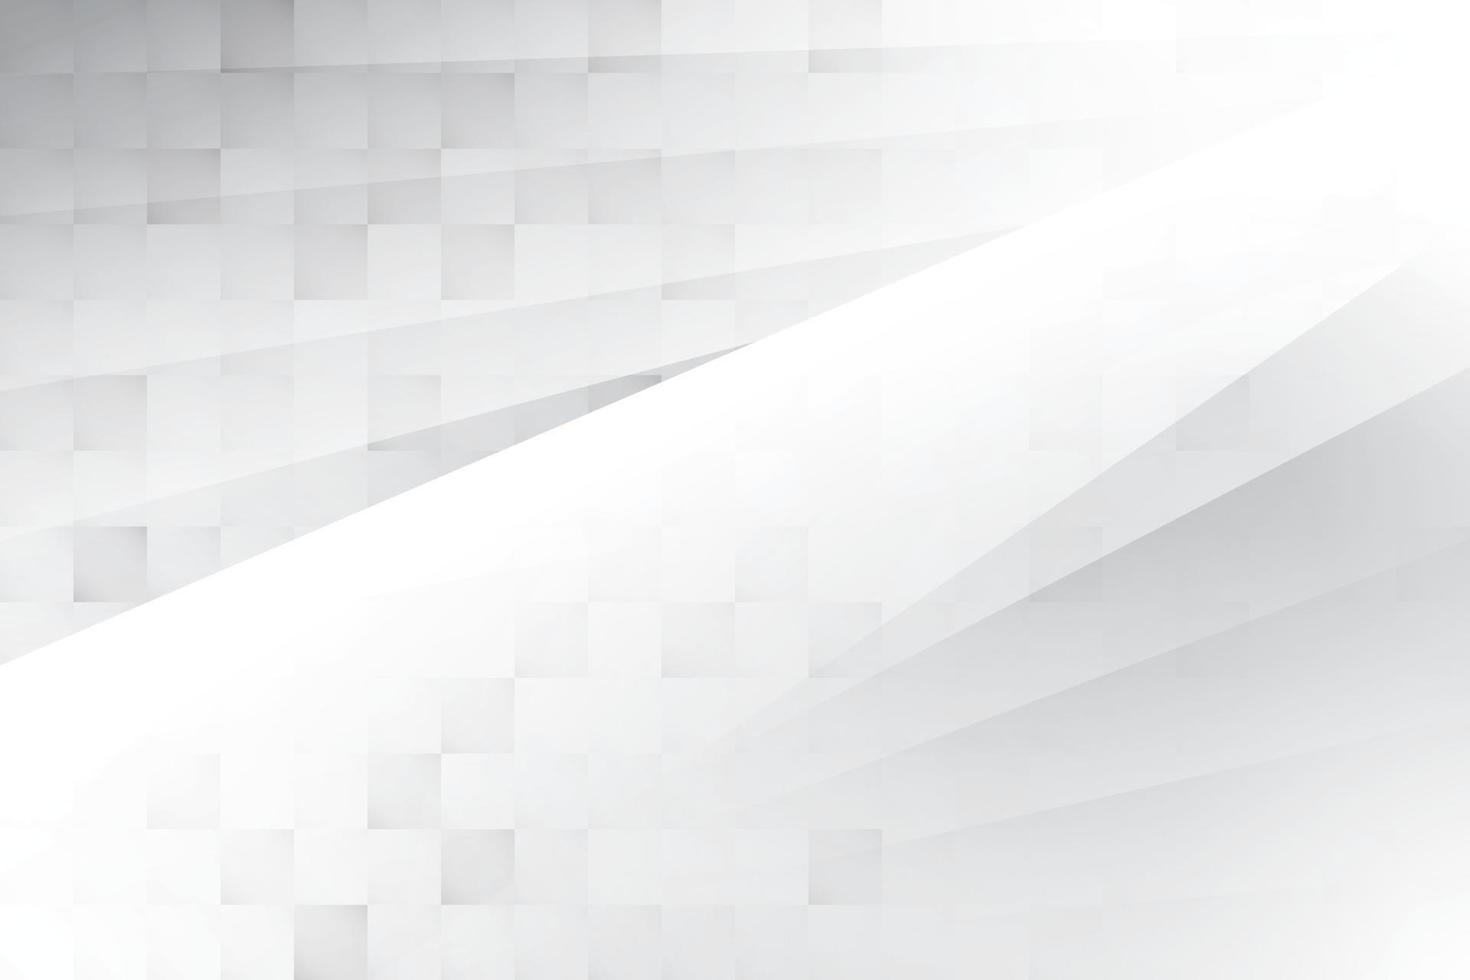 couleur blanche et grise abstraite, arrière-plan design moderne avec forme géométrique. illustration vectorielle. vecteur